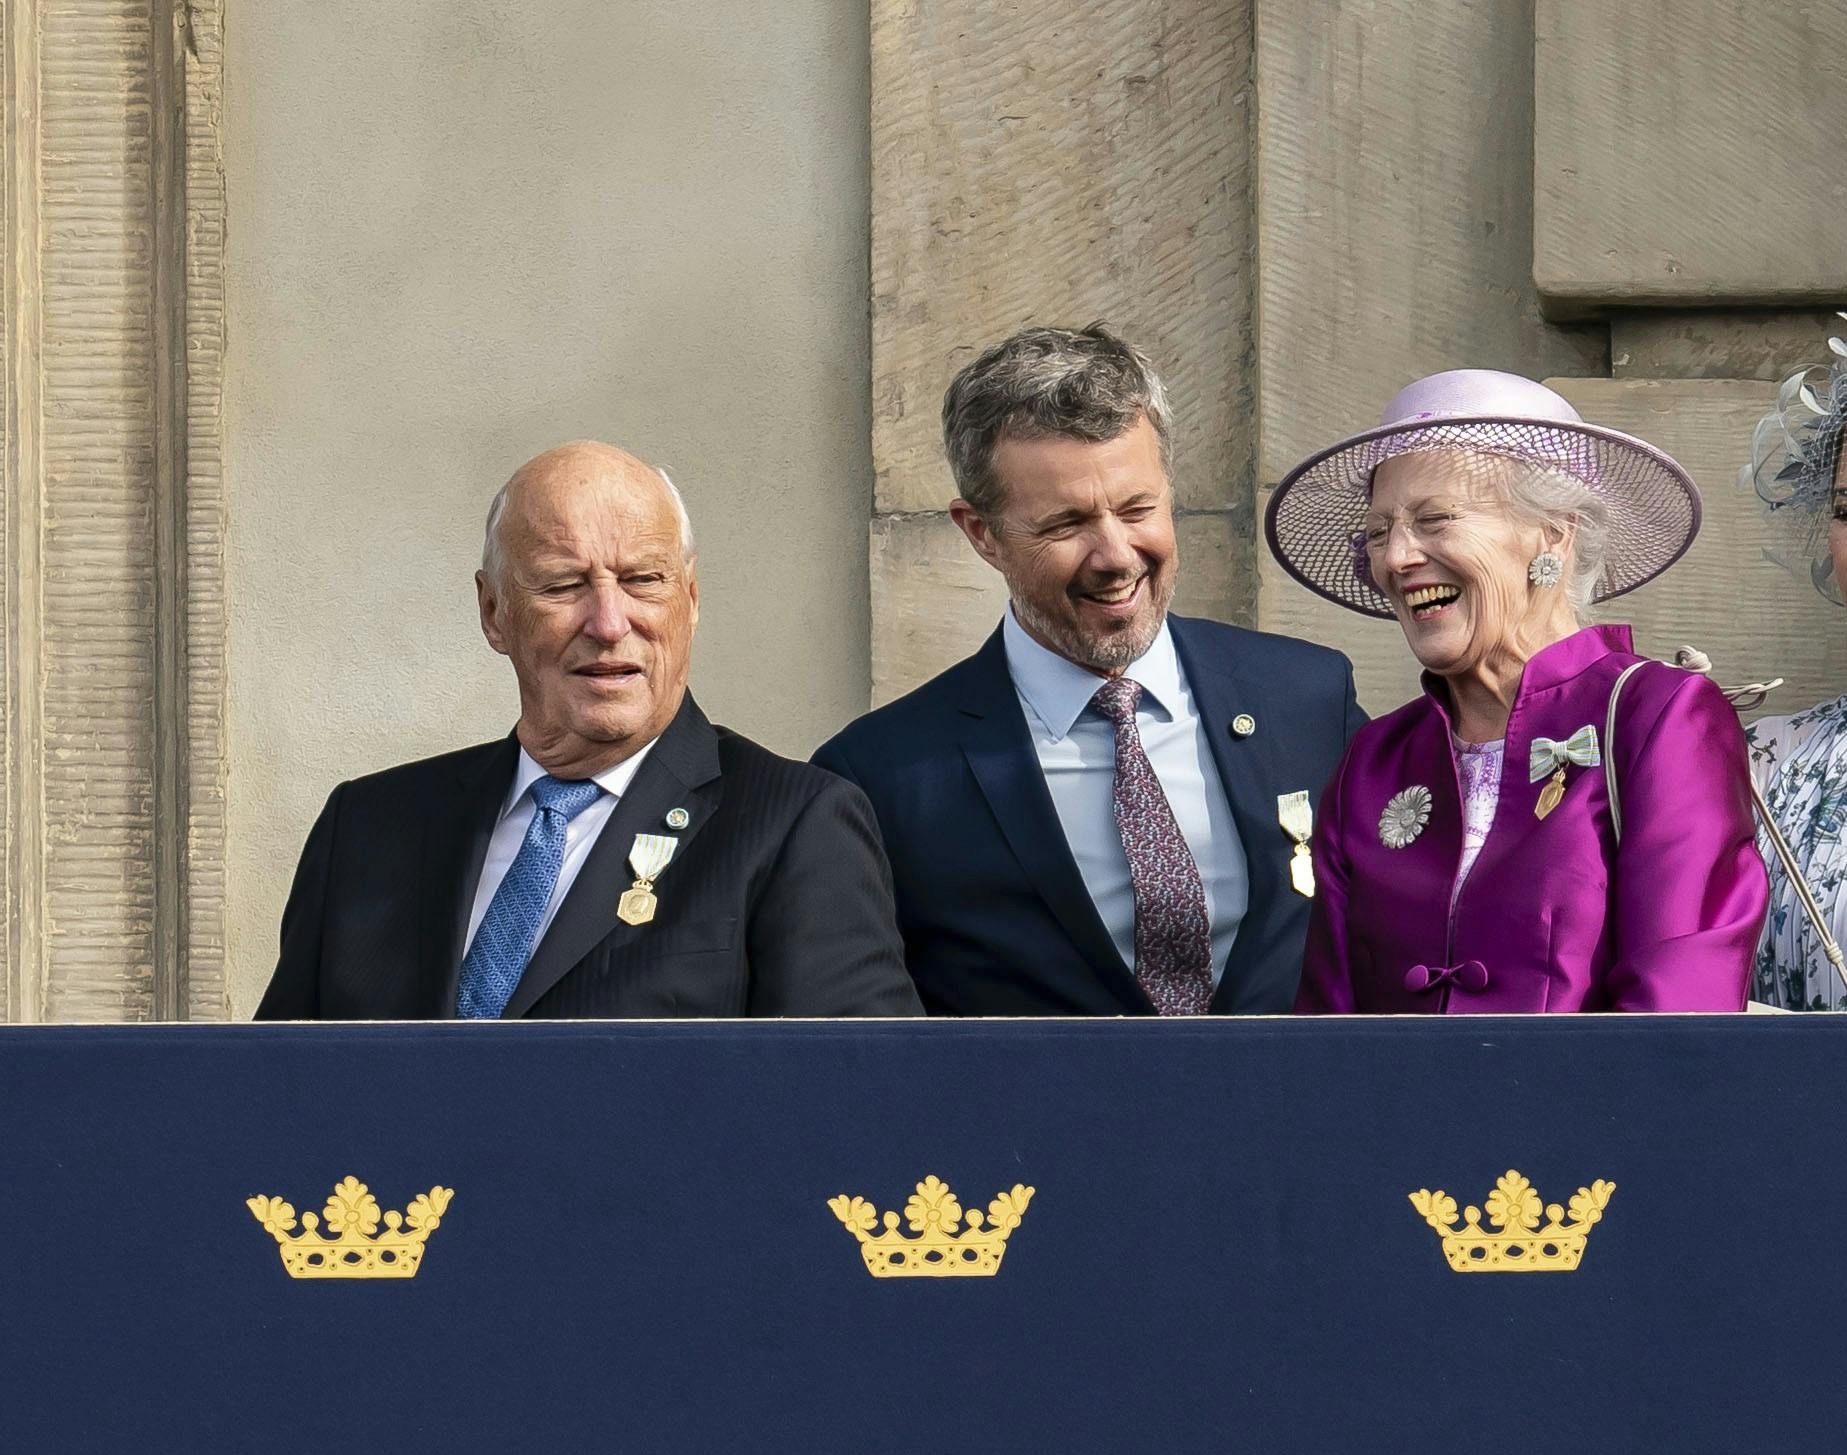 Mens kong Frederik har overtaget efter sin mor, har norske kong Harald ikke planer om at lave samme stunt, slår han fast. 